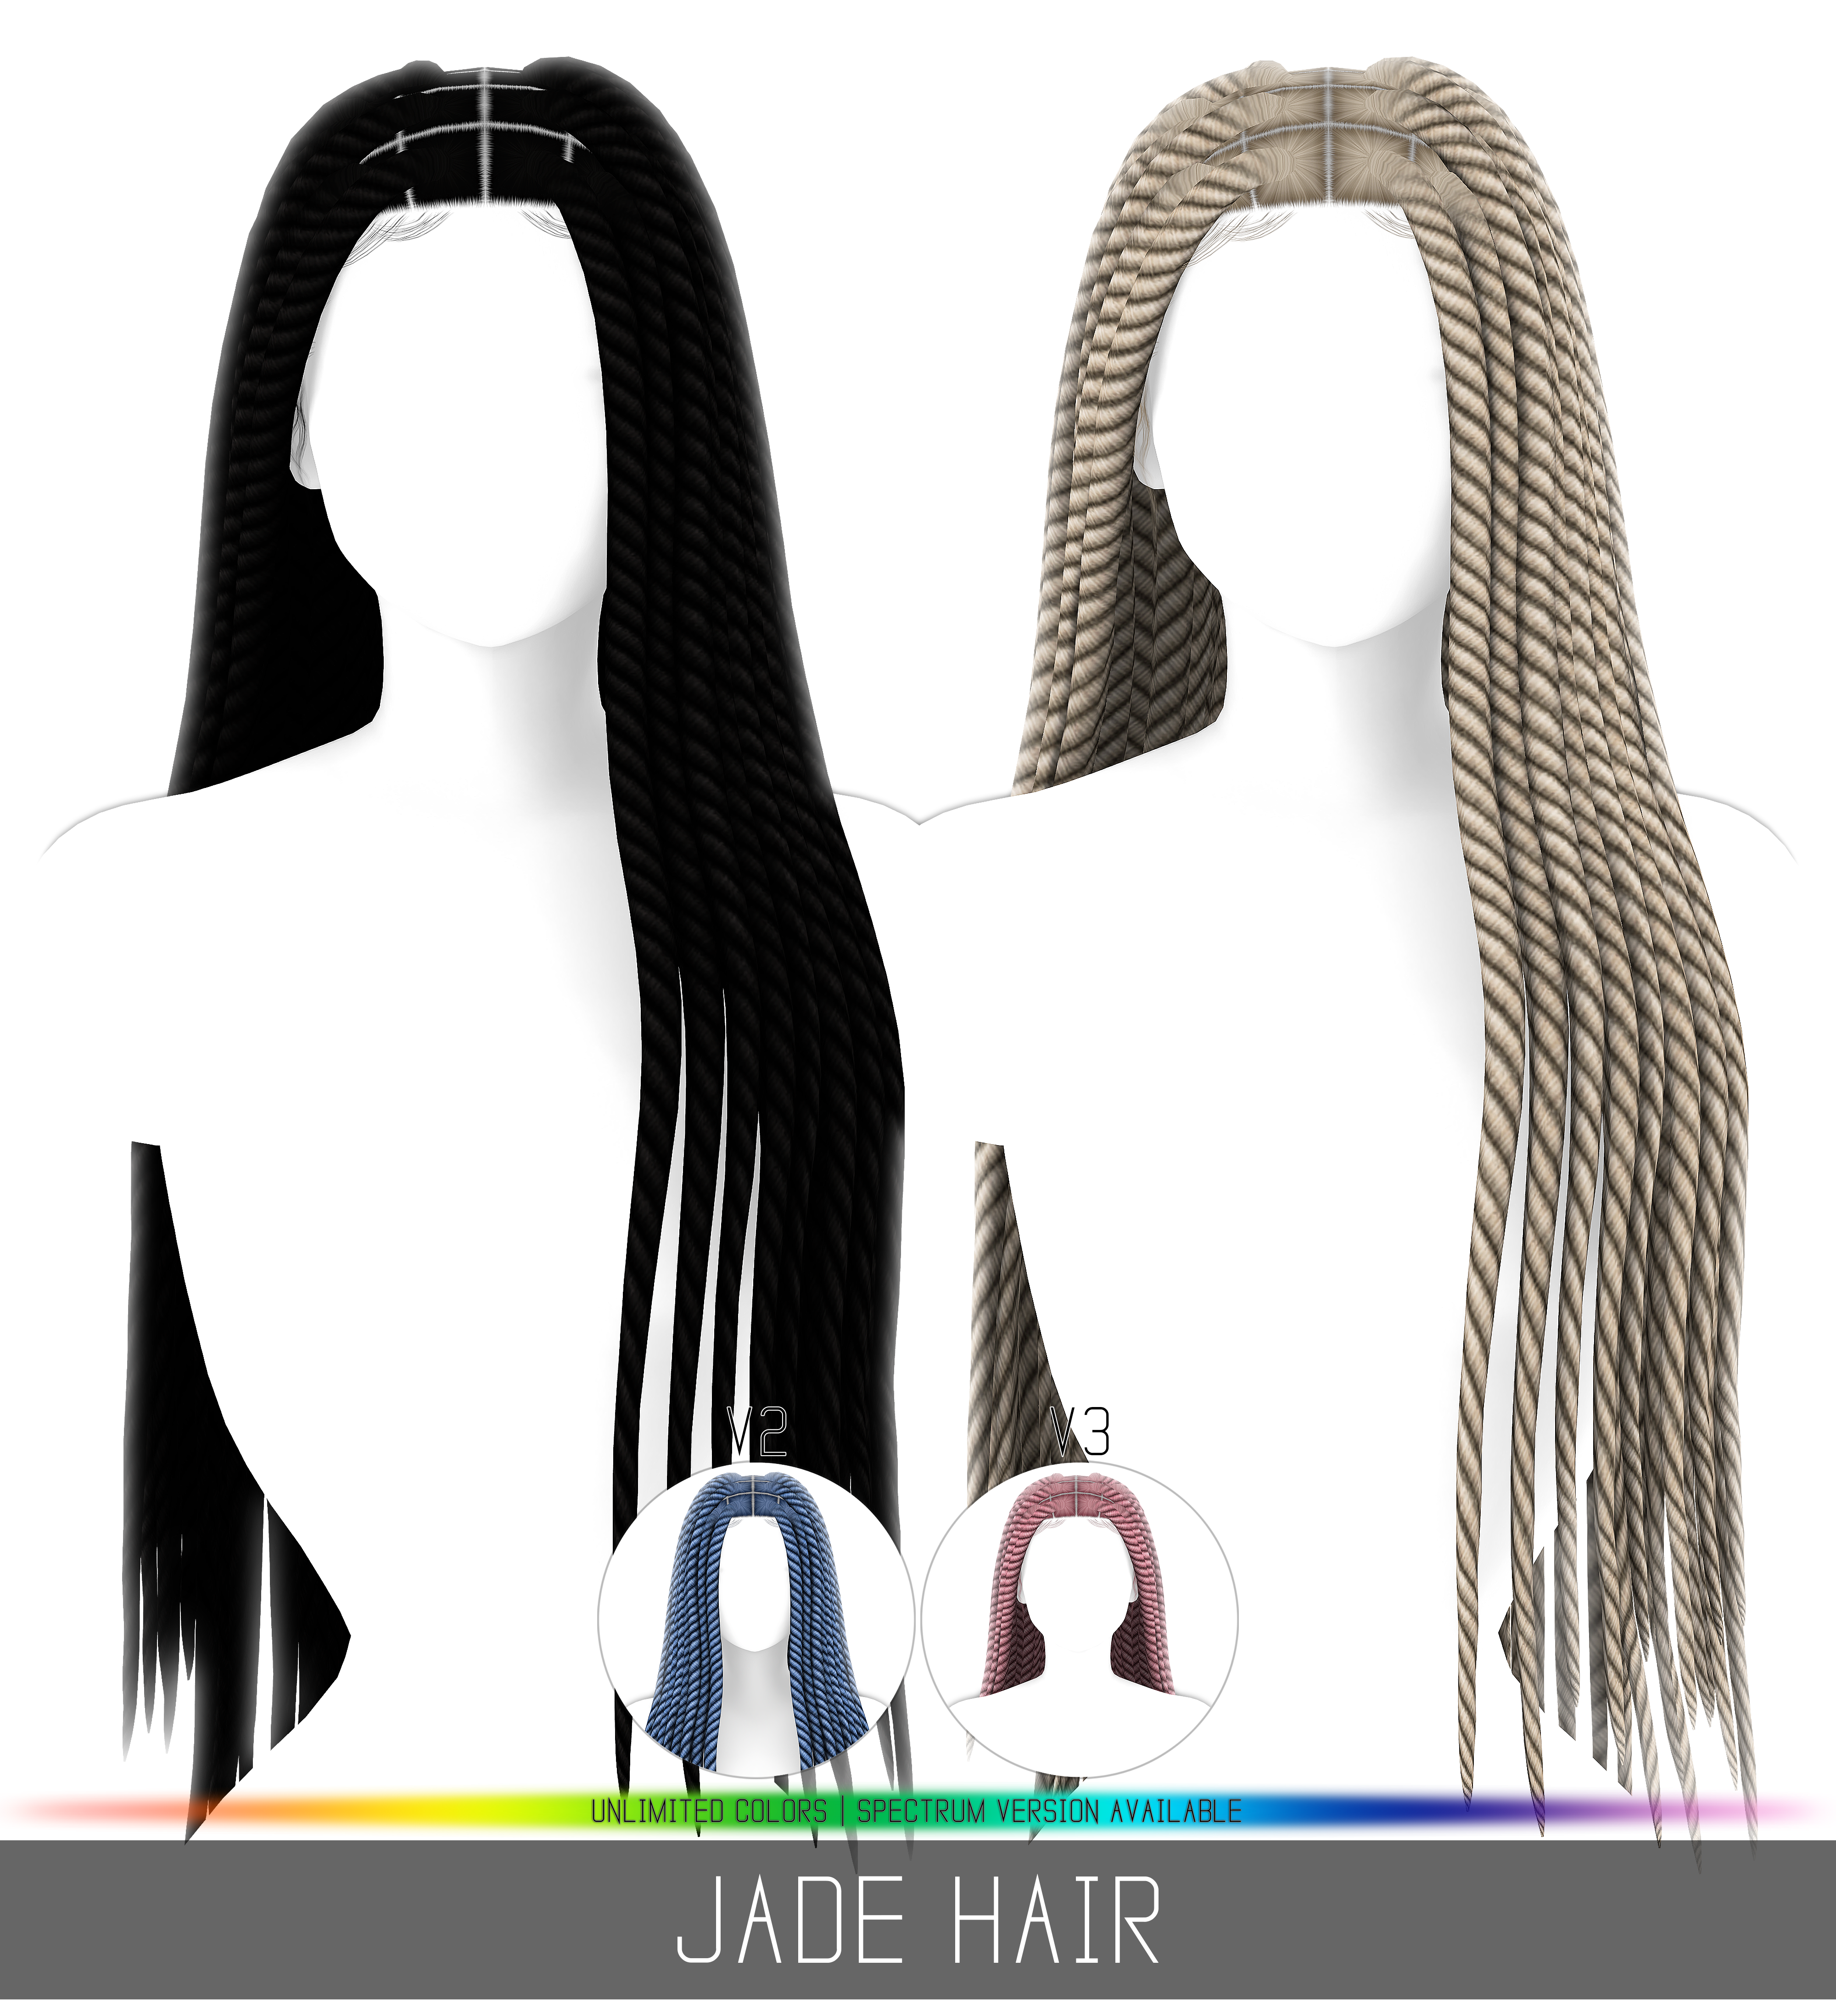 Simpliciaty's Jade Hair - The Sims 4 Create a Sim - CurseForge